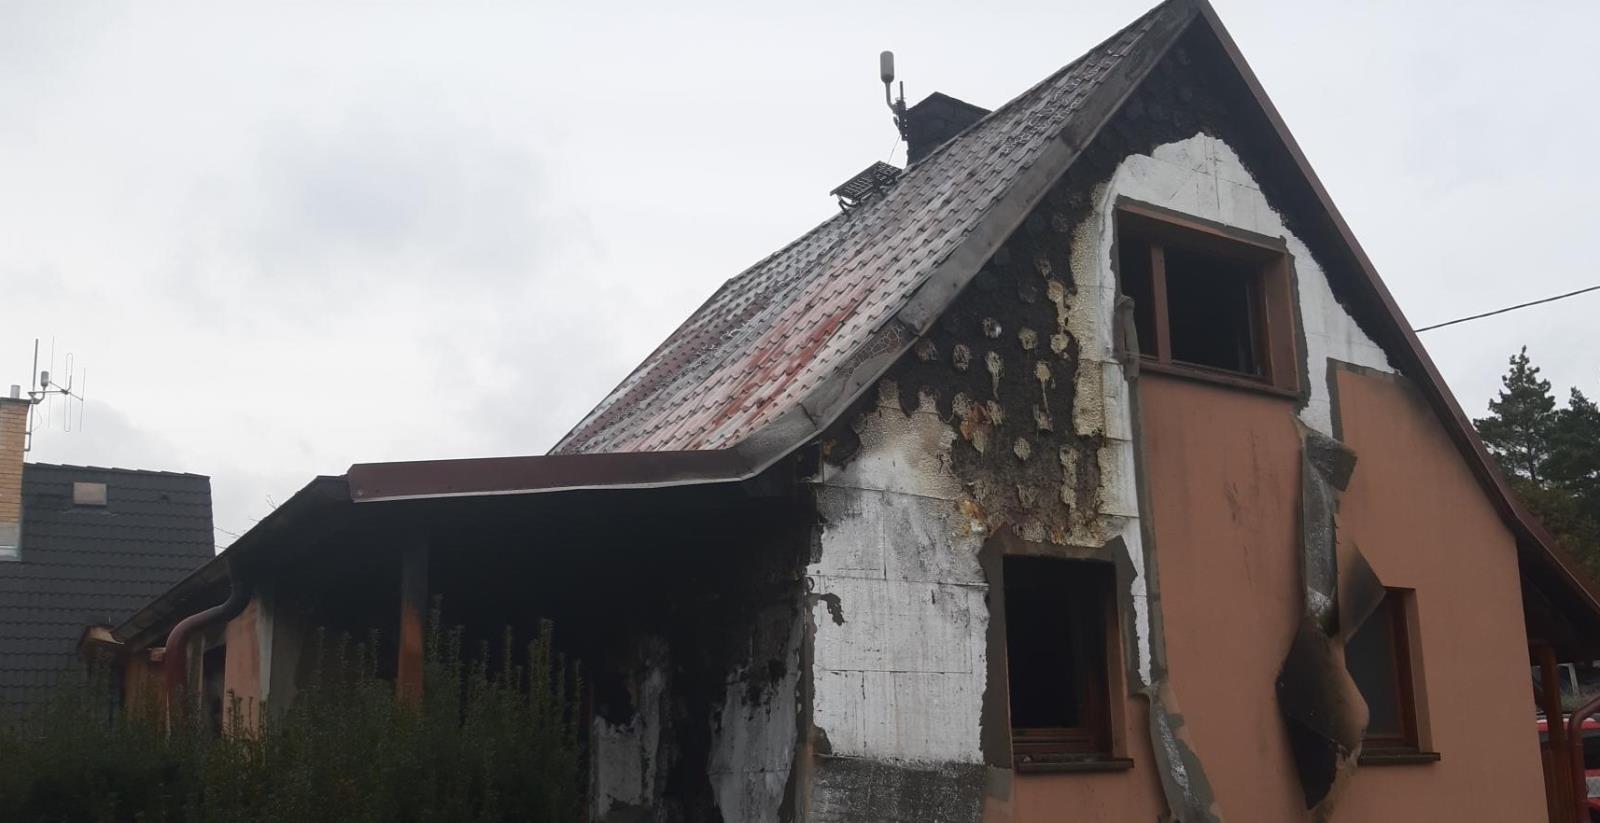 003 - požár rodinného domu Kamenný Újezdec.jpg